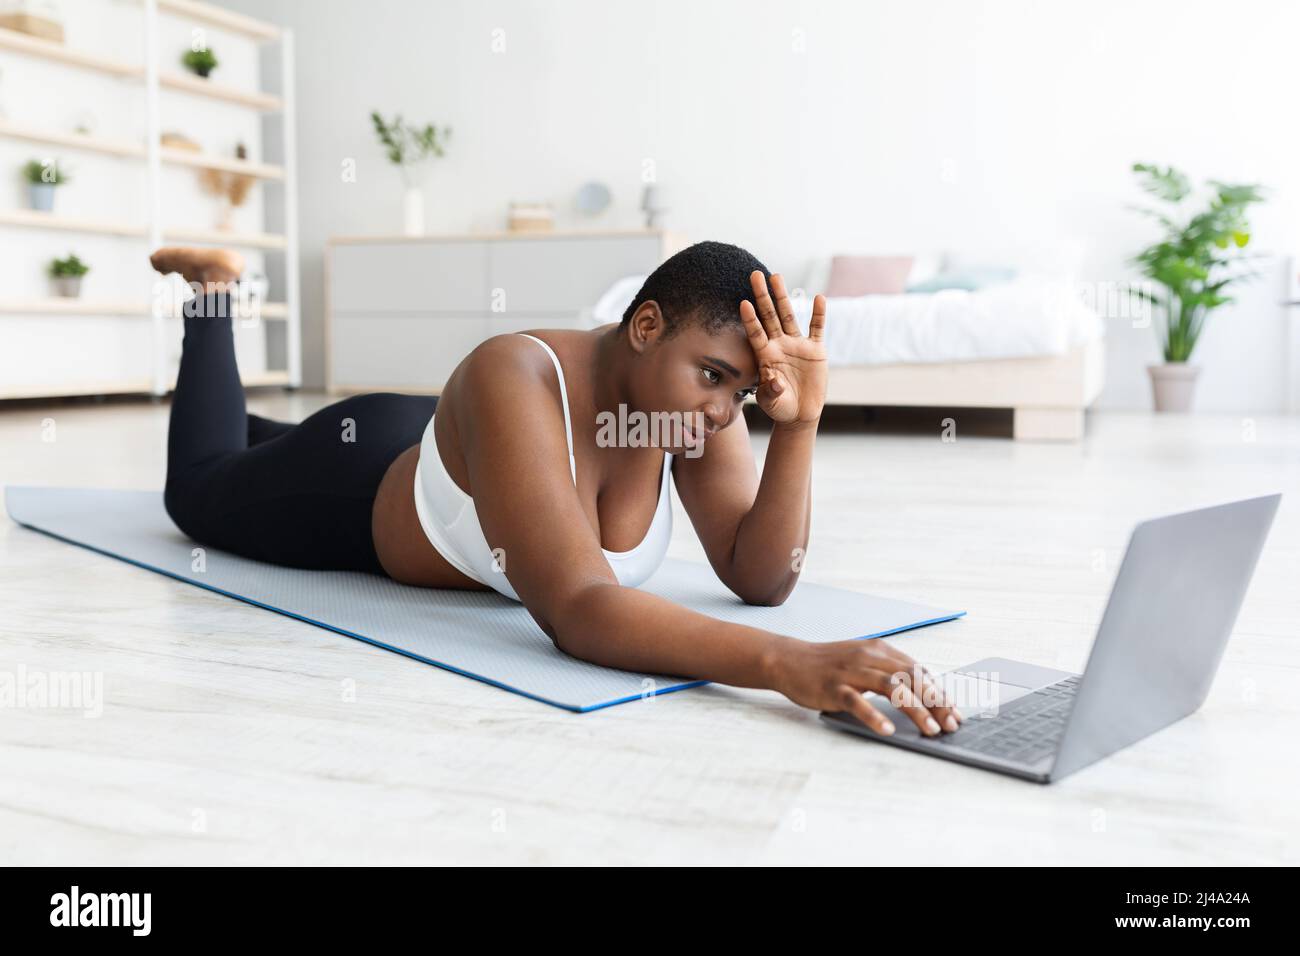 Femme noire fatiguée de plus grande taille, couchée sur un tapis de yoga près d'un ordinateur portable, essuyant le front après un entraînement de force à la maison Banque D'Images